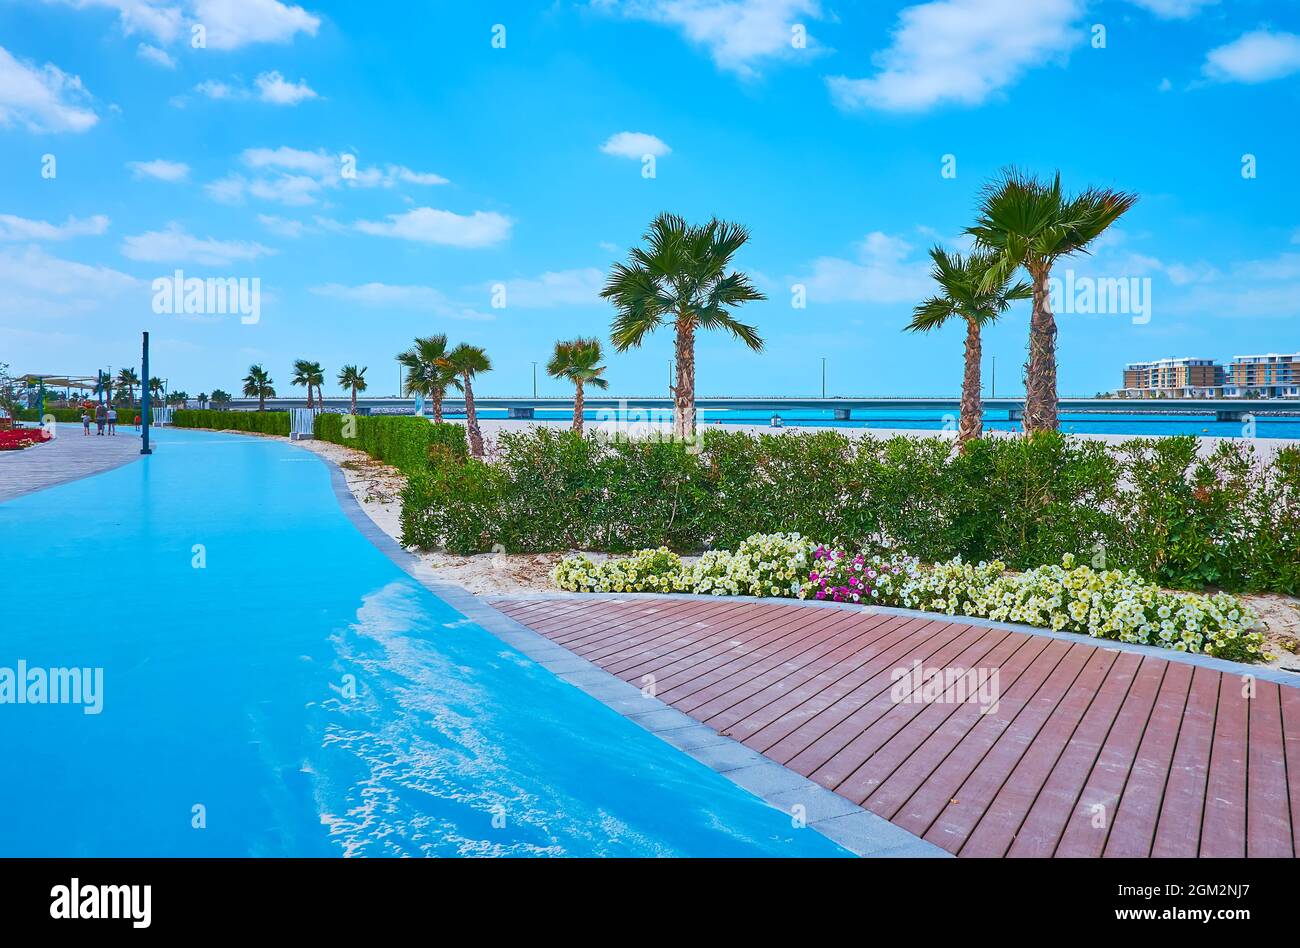 La piste de jogging en caoutchouc courbe bleu vif s'étend le long de la plage de Jumeirah, Dubaï, Émirats arabes Unis Banque D'Images